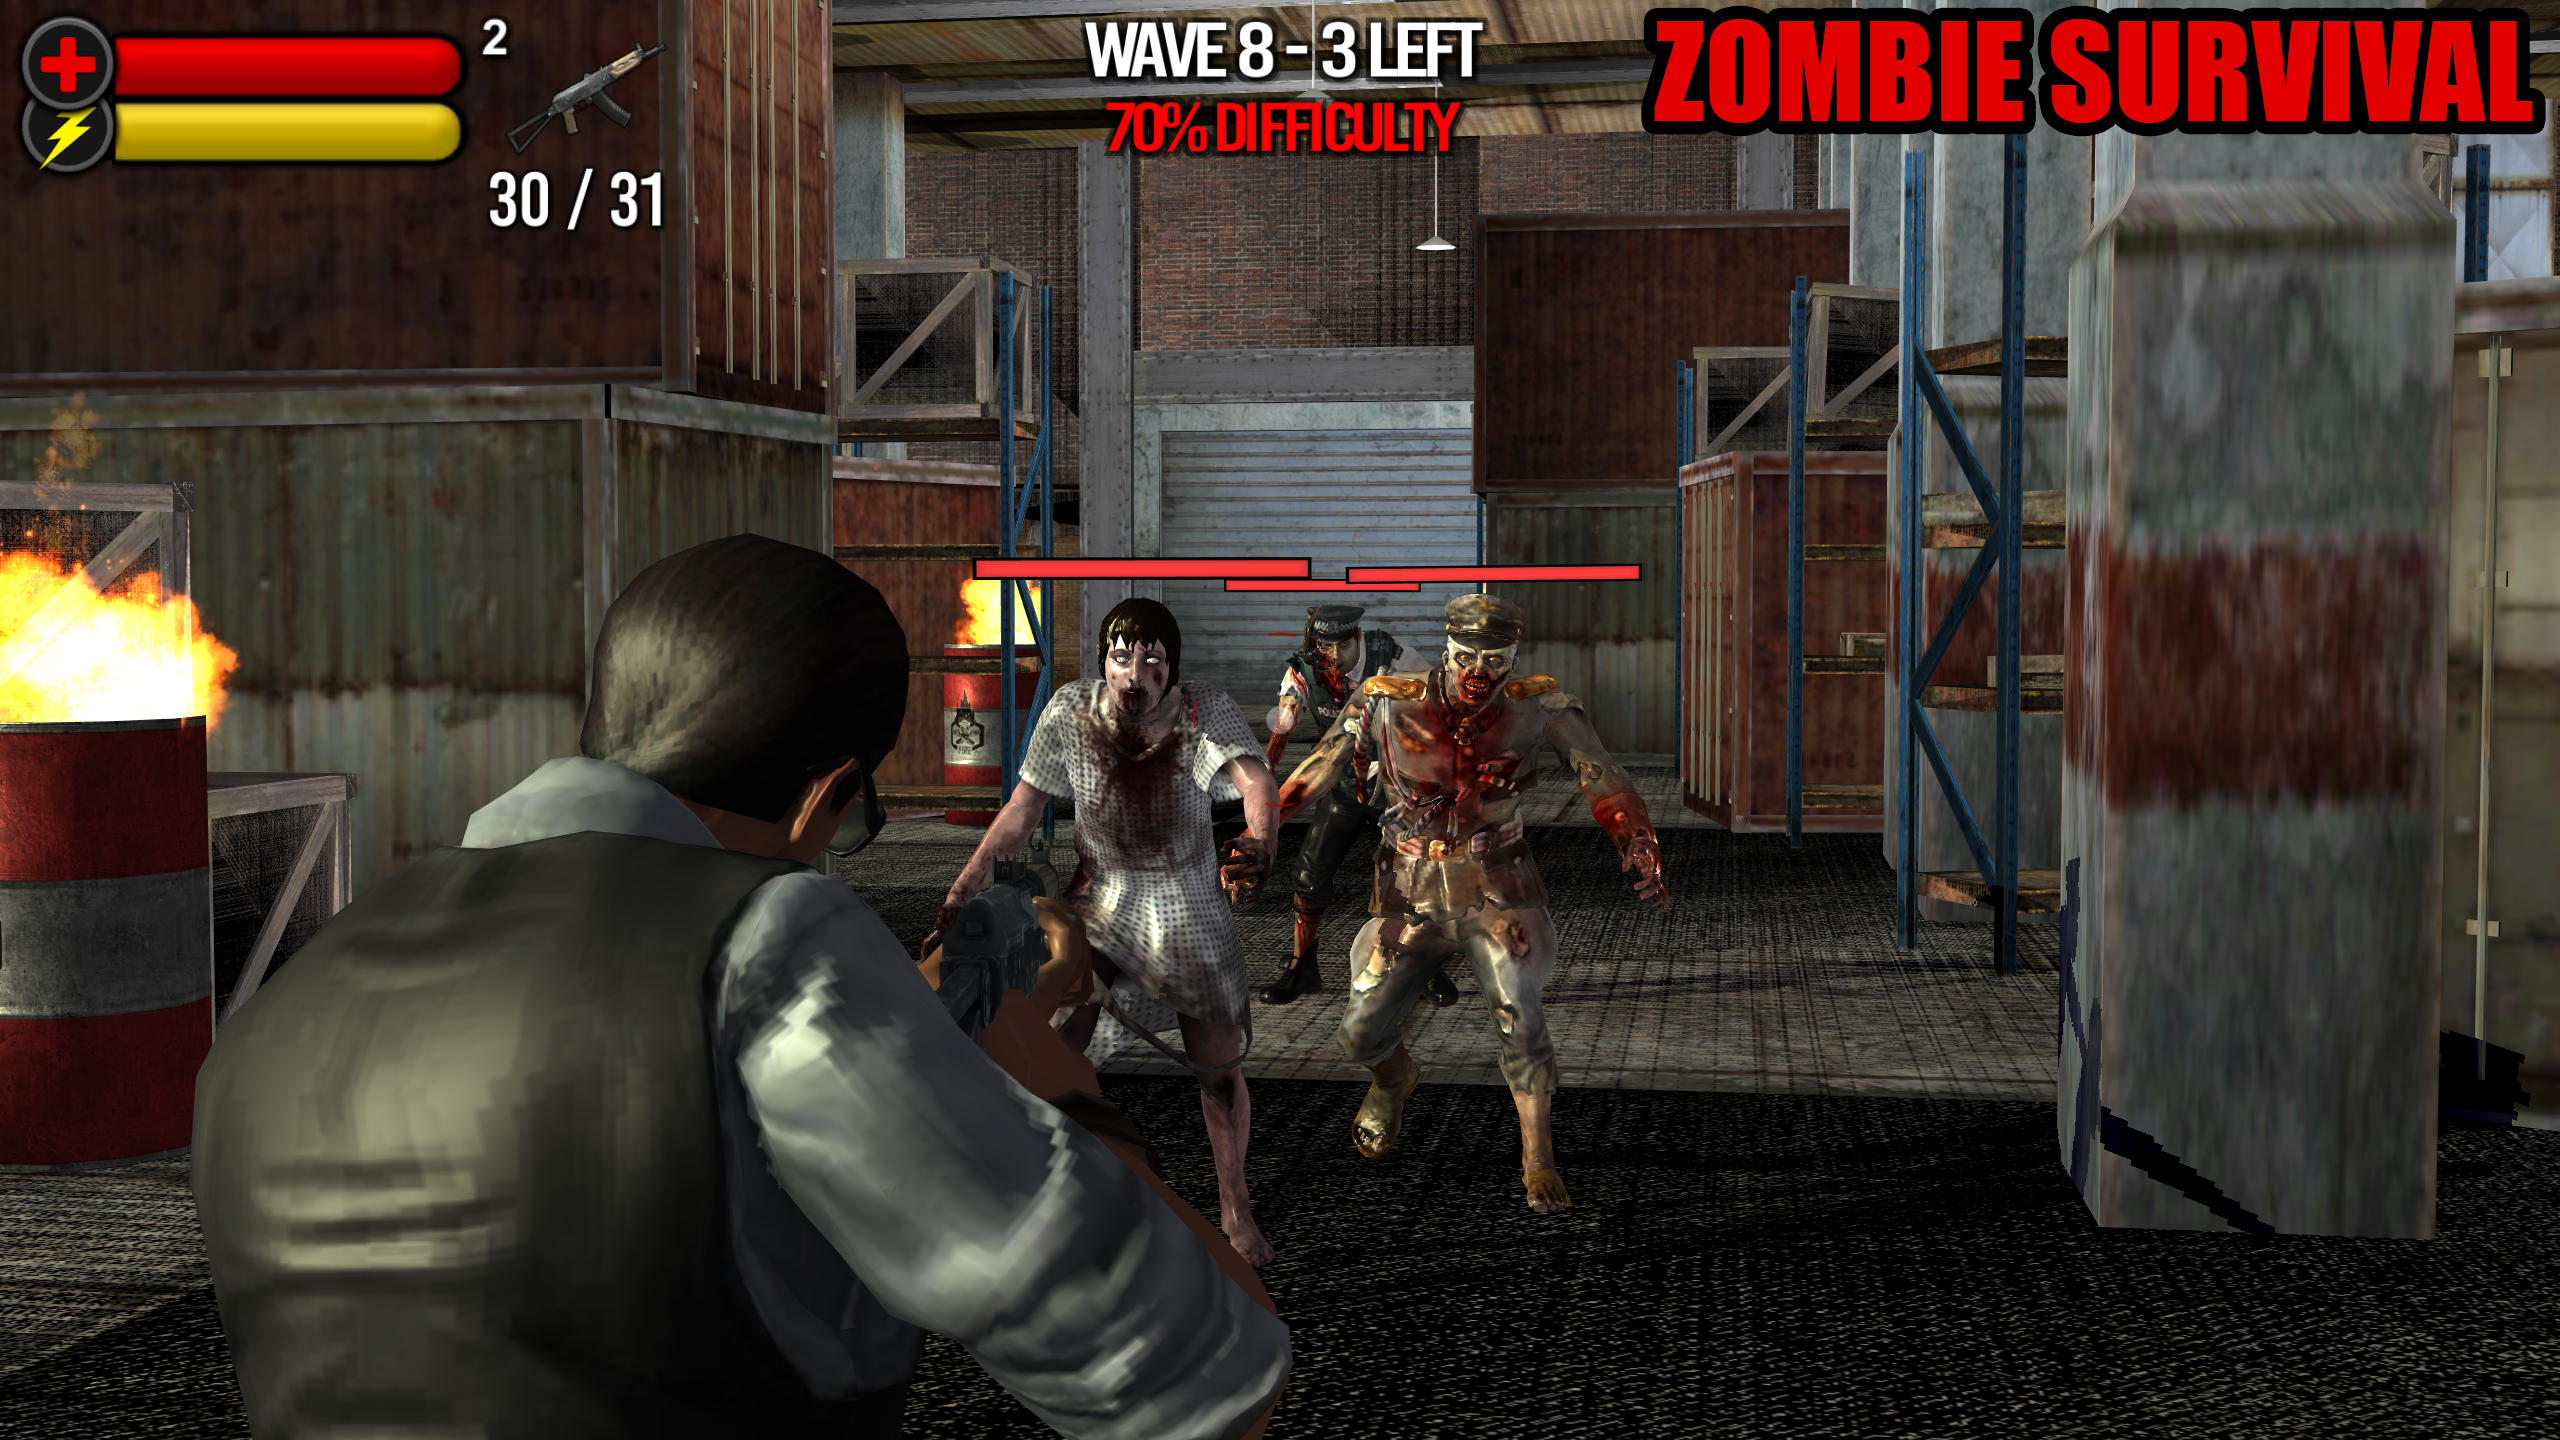 Yeni Mobil Oyunum - Zombie Survival - Android & IOS (Desteklerinizi Bekliyorum)